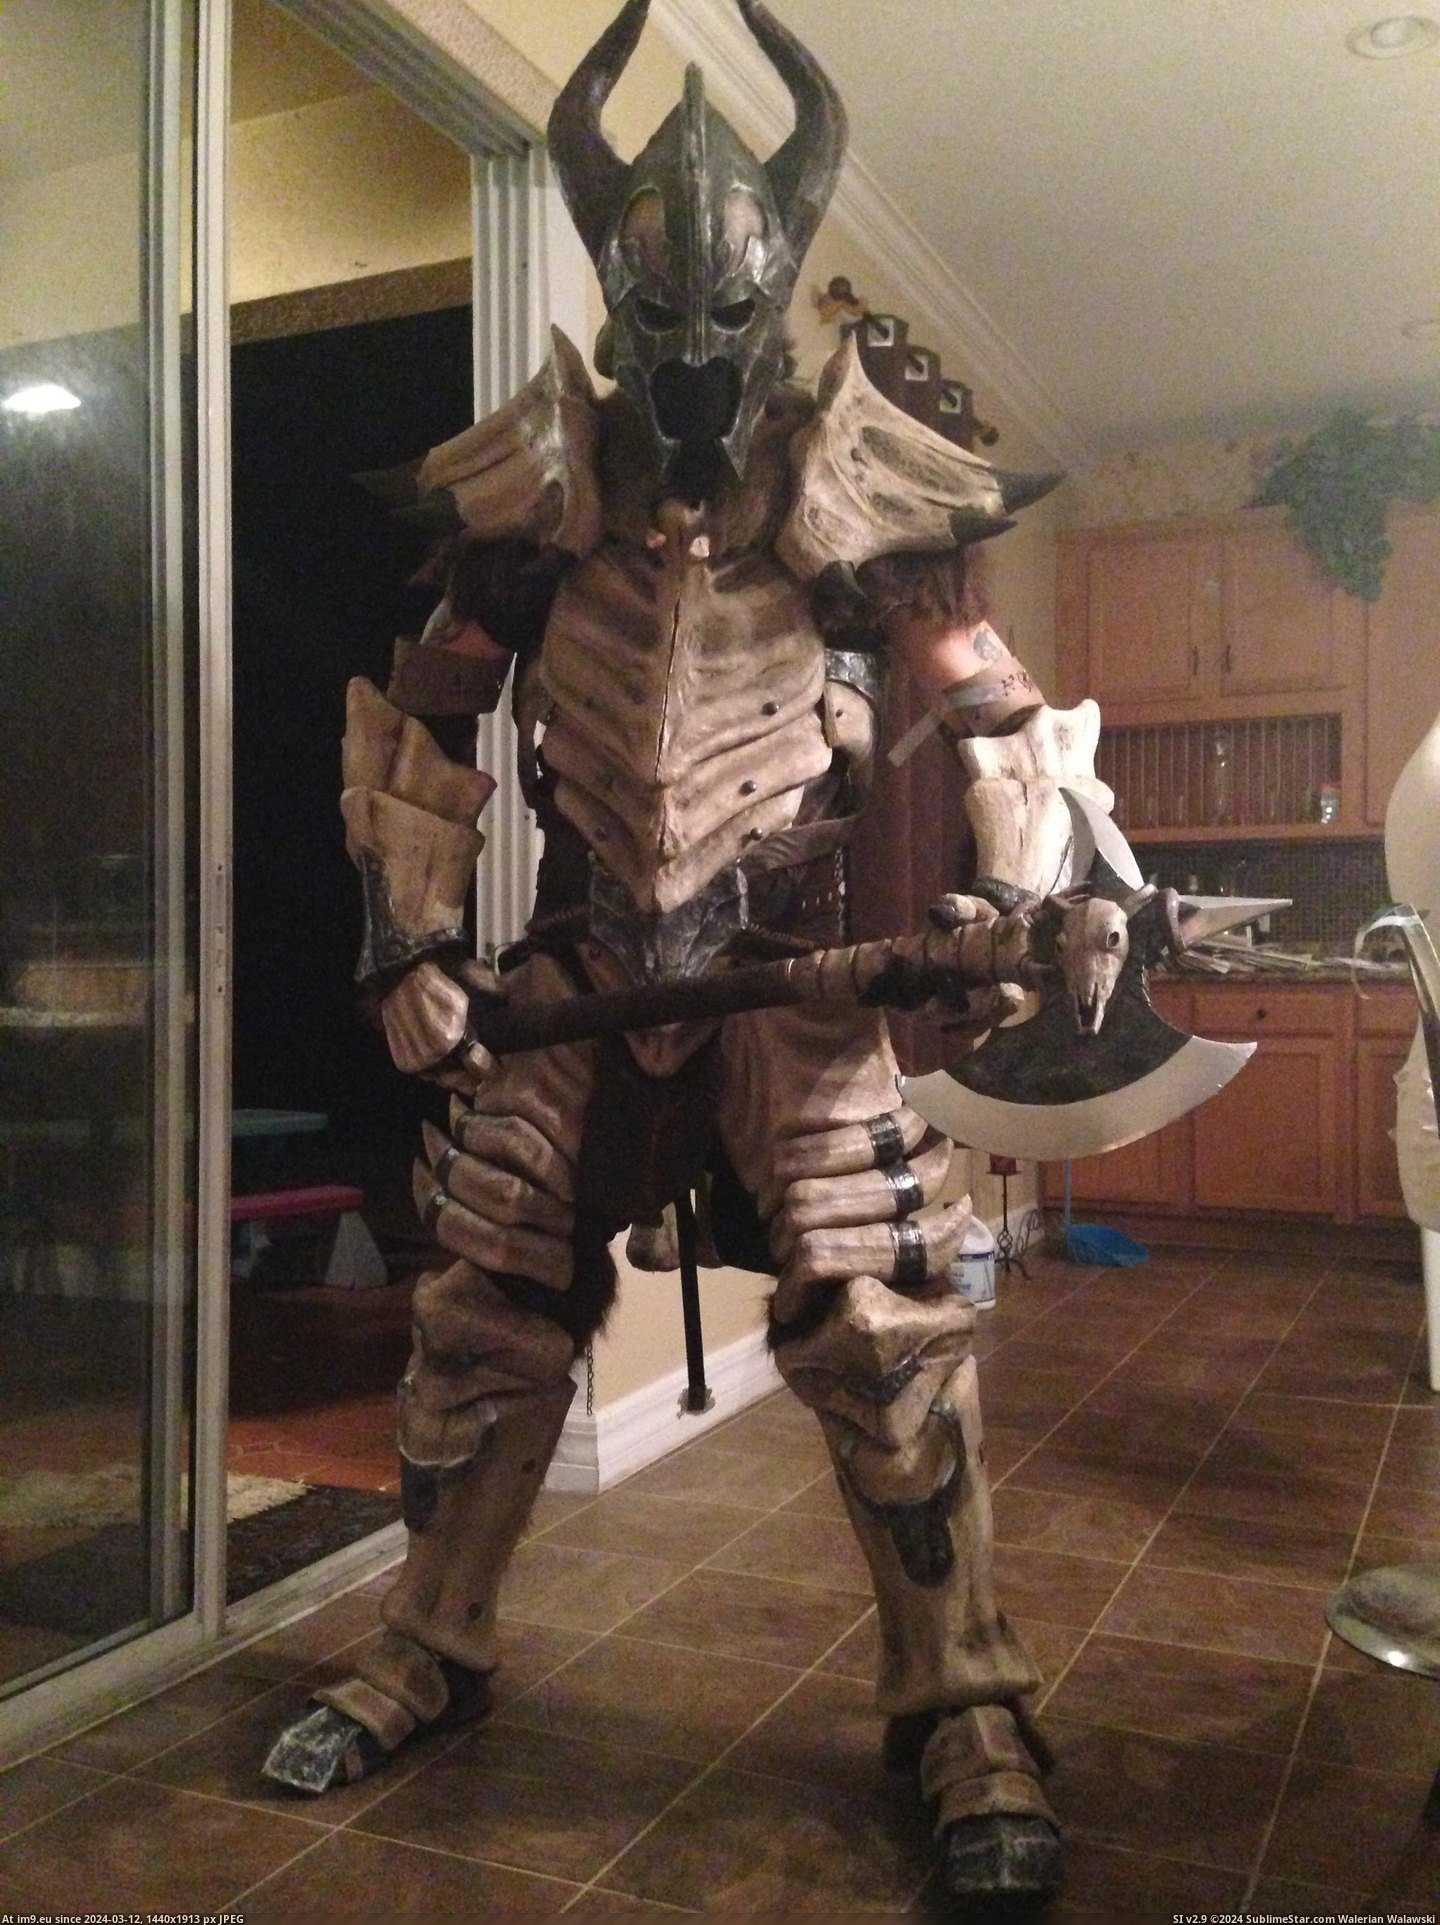 #Gaming #How #Dragonbone #Skyrim #Armor [Gaming] [Self] Skyrim Dragonbone Armor - How I made it 27 Pic. (Bild von album My r/GAMING favs))